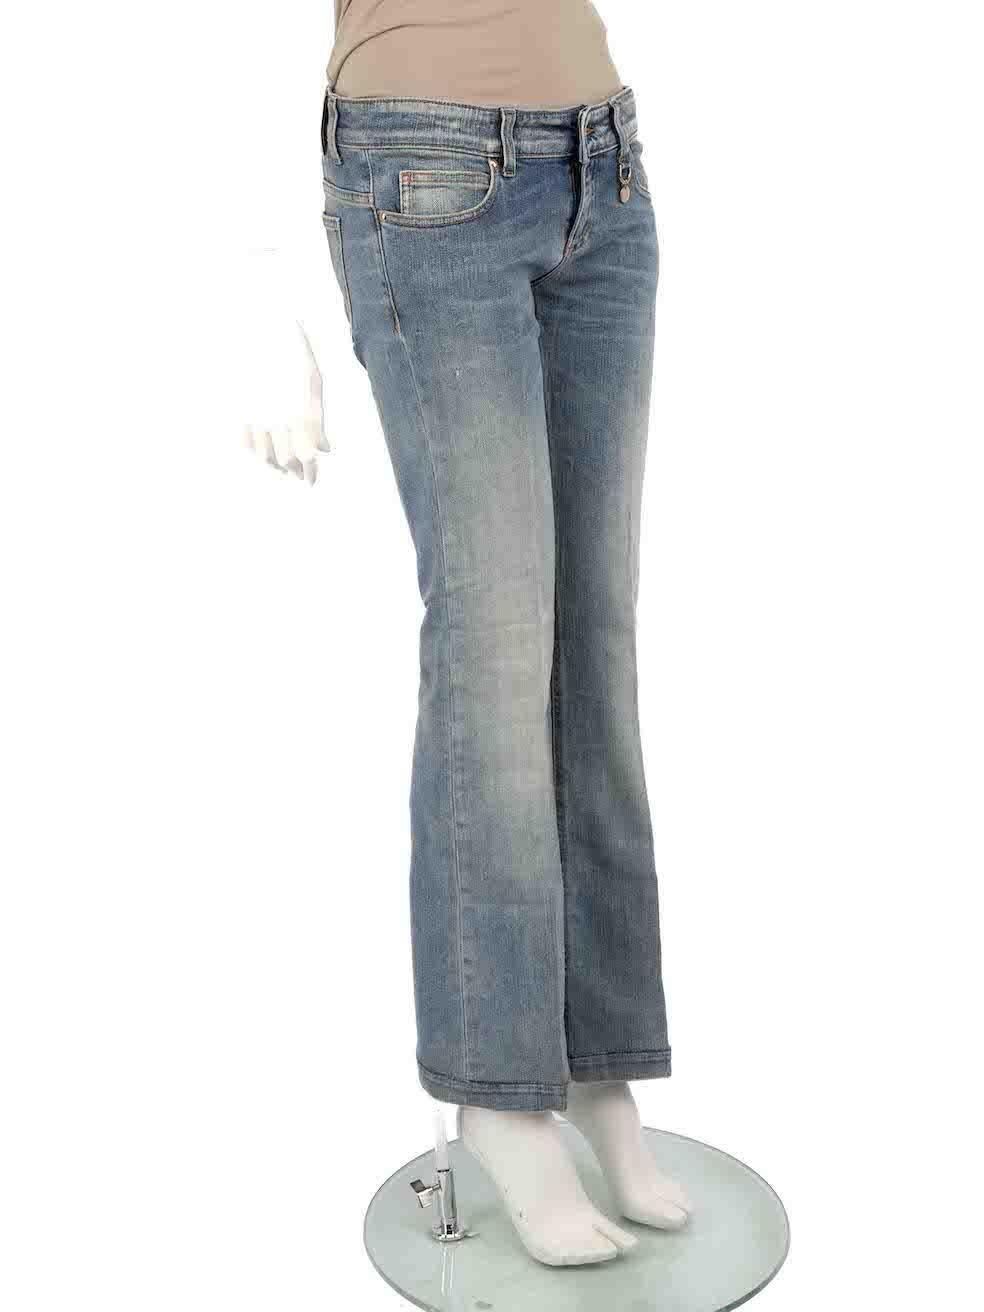 CONDIT ist sehr gut. Die Jeans weisen nur minimale Abnutzungserscheinungen auf. Minimale Abnutzungserscheinungen am vorderen rechten Bein mit einem kleinen Riss im Stoff an diesem gebrauchten Gucci Designer Wiederverkaufsartikel.
 
 
 
